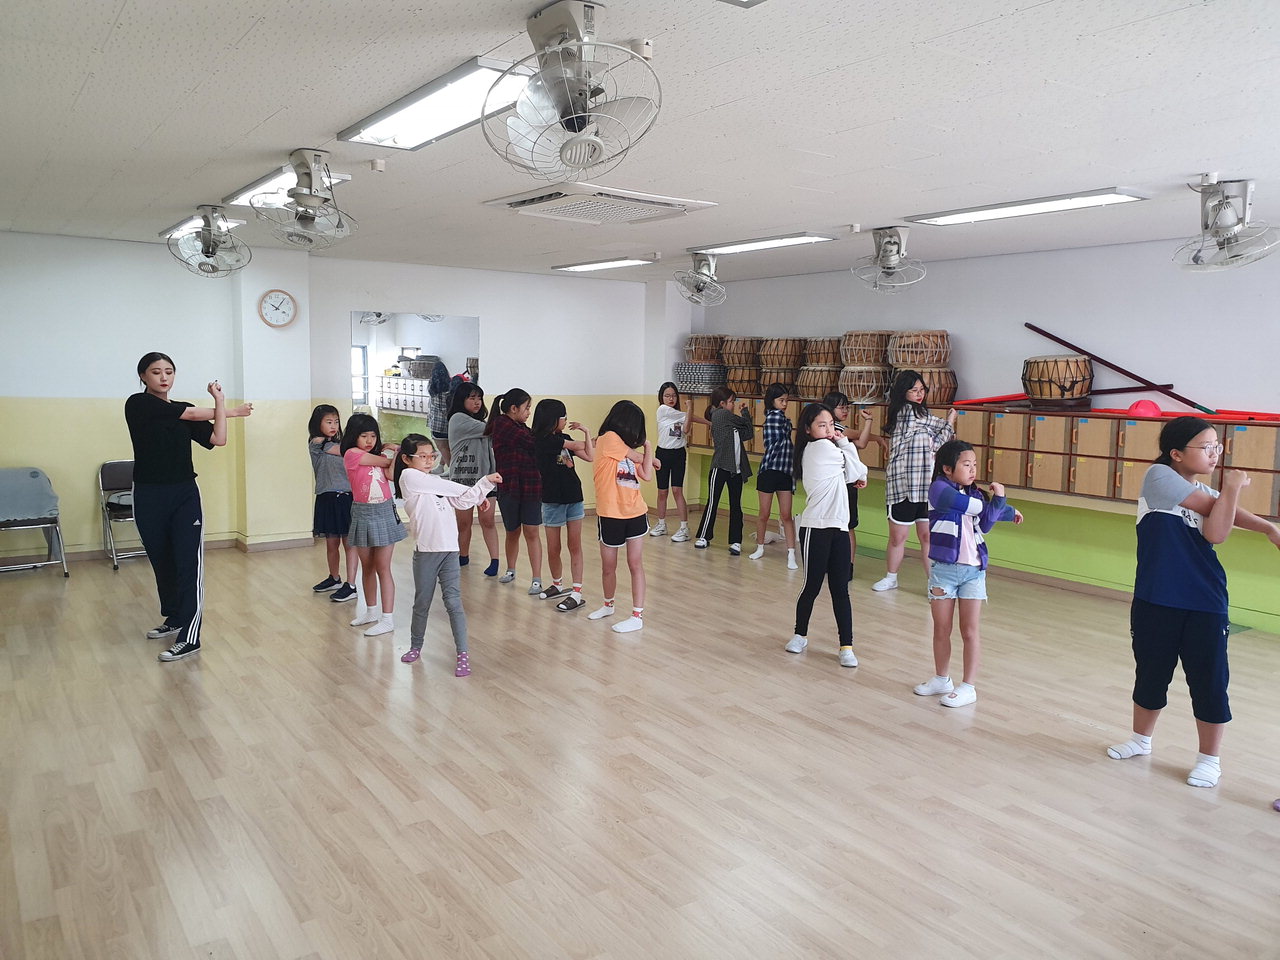 천안신촌초등학교에서 주말을 이용한 방송댄스 프로그램이 진행되고 있다. 천안교육지원청